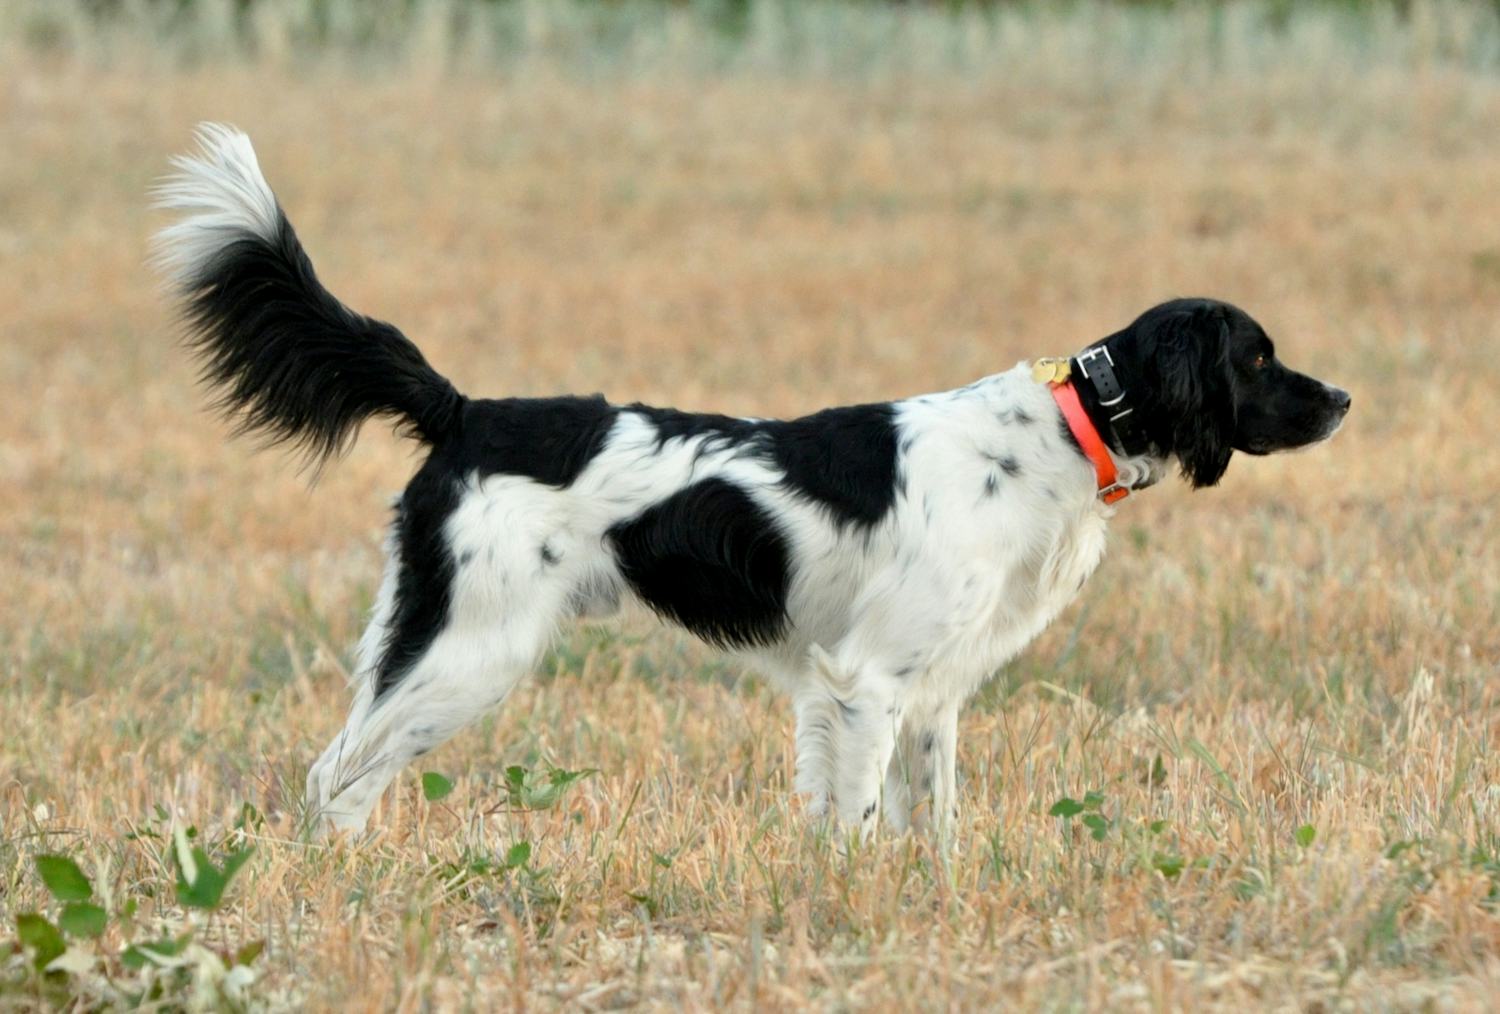 Secondary image of Large Munsterlander dog breed